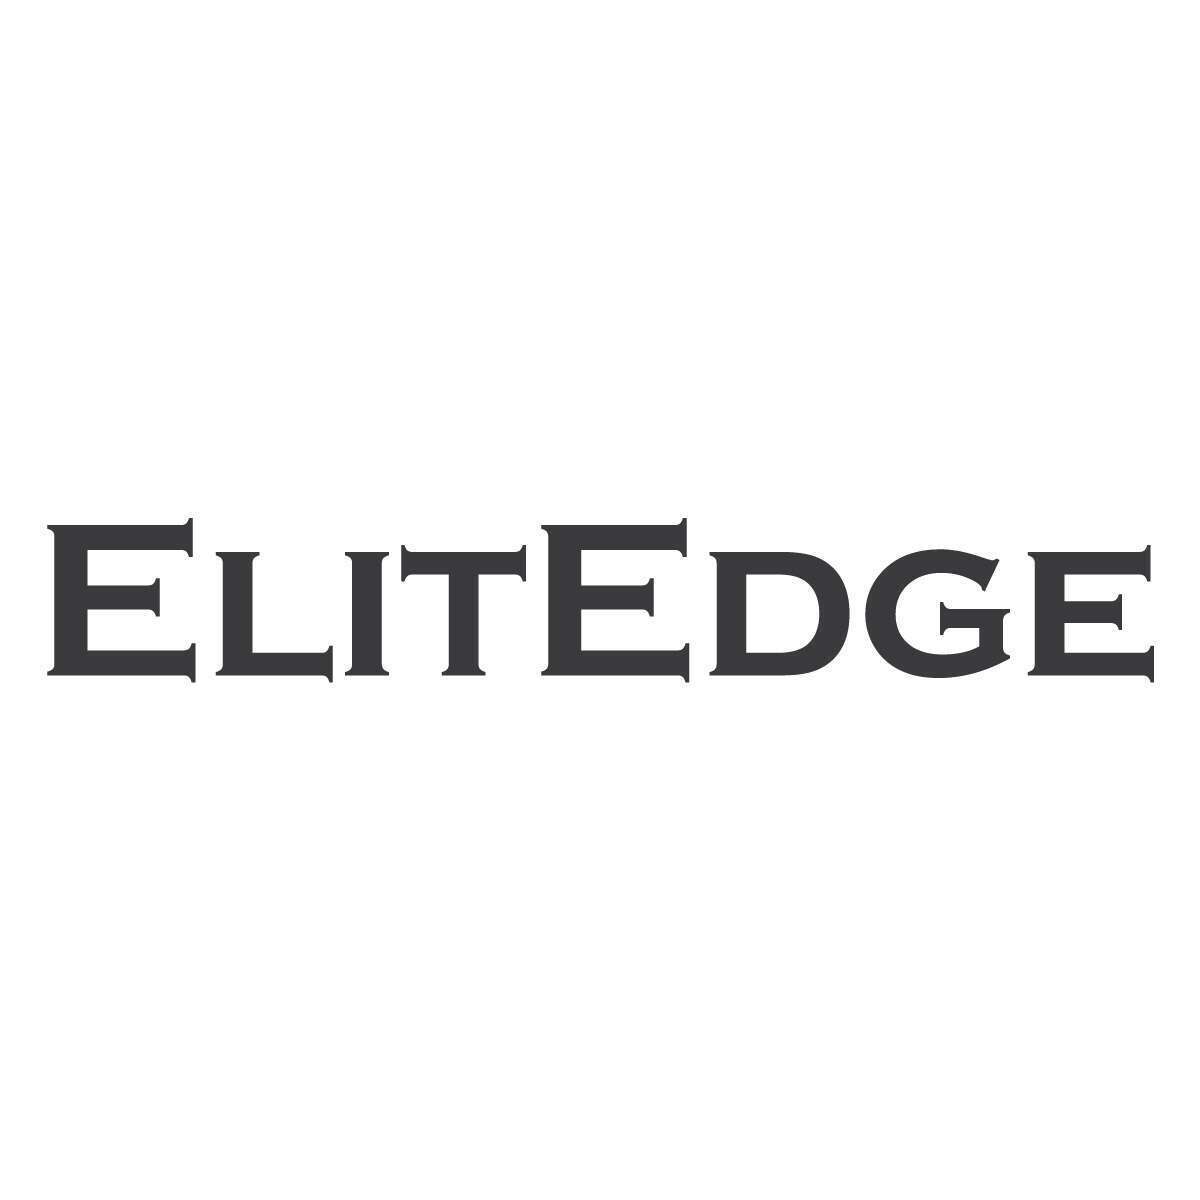 Elite edge logo